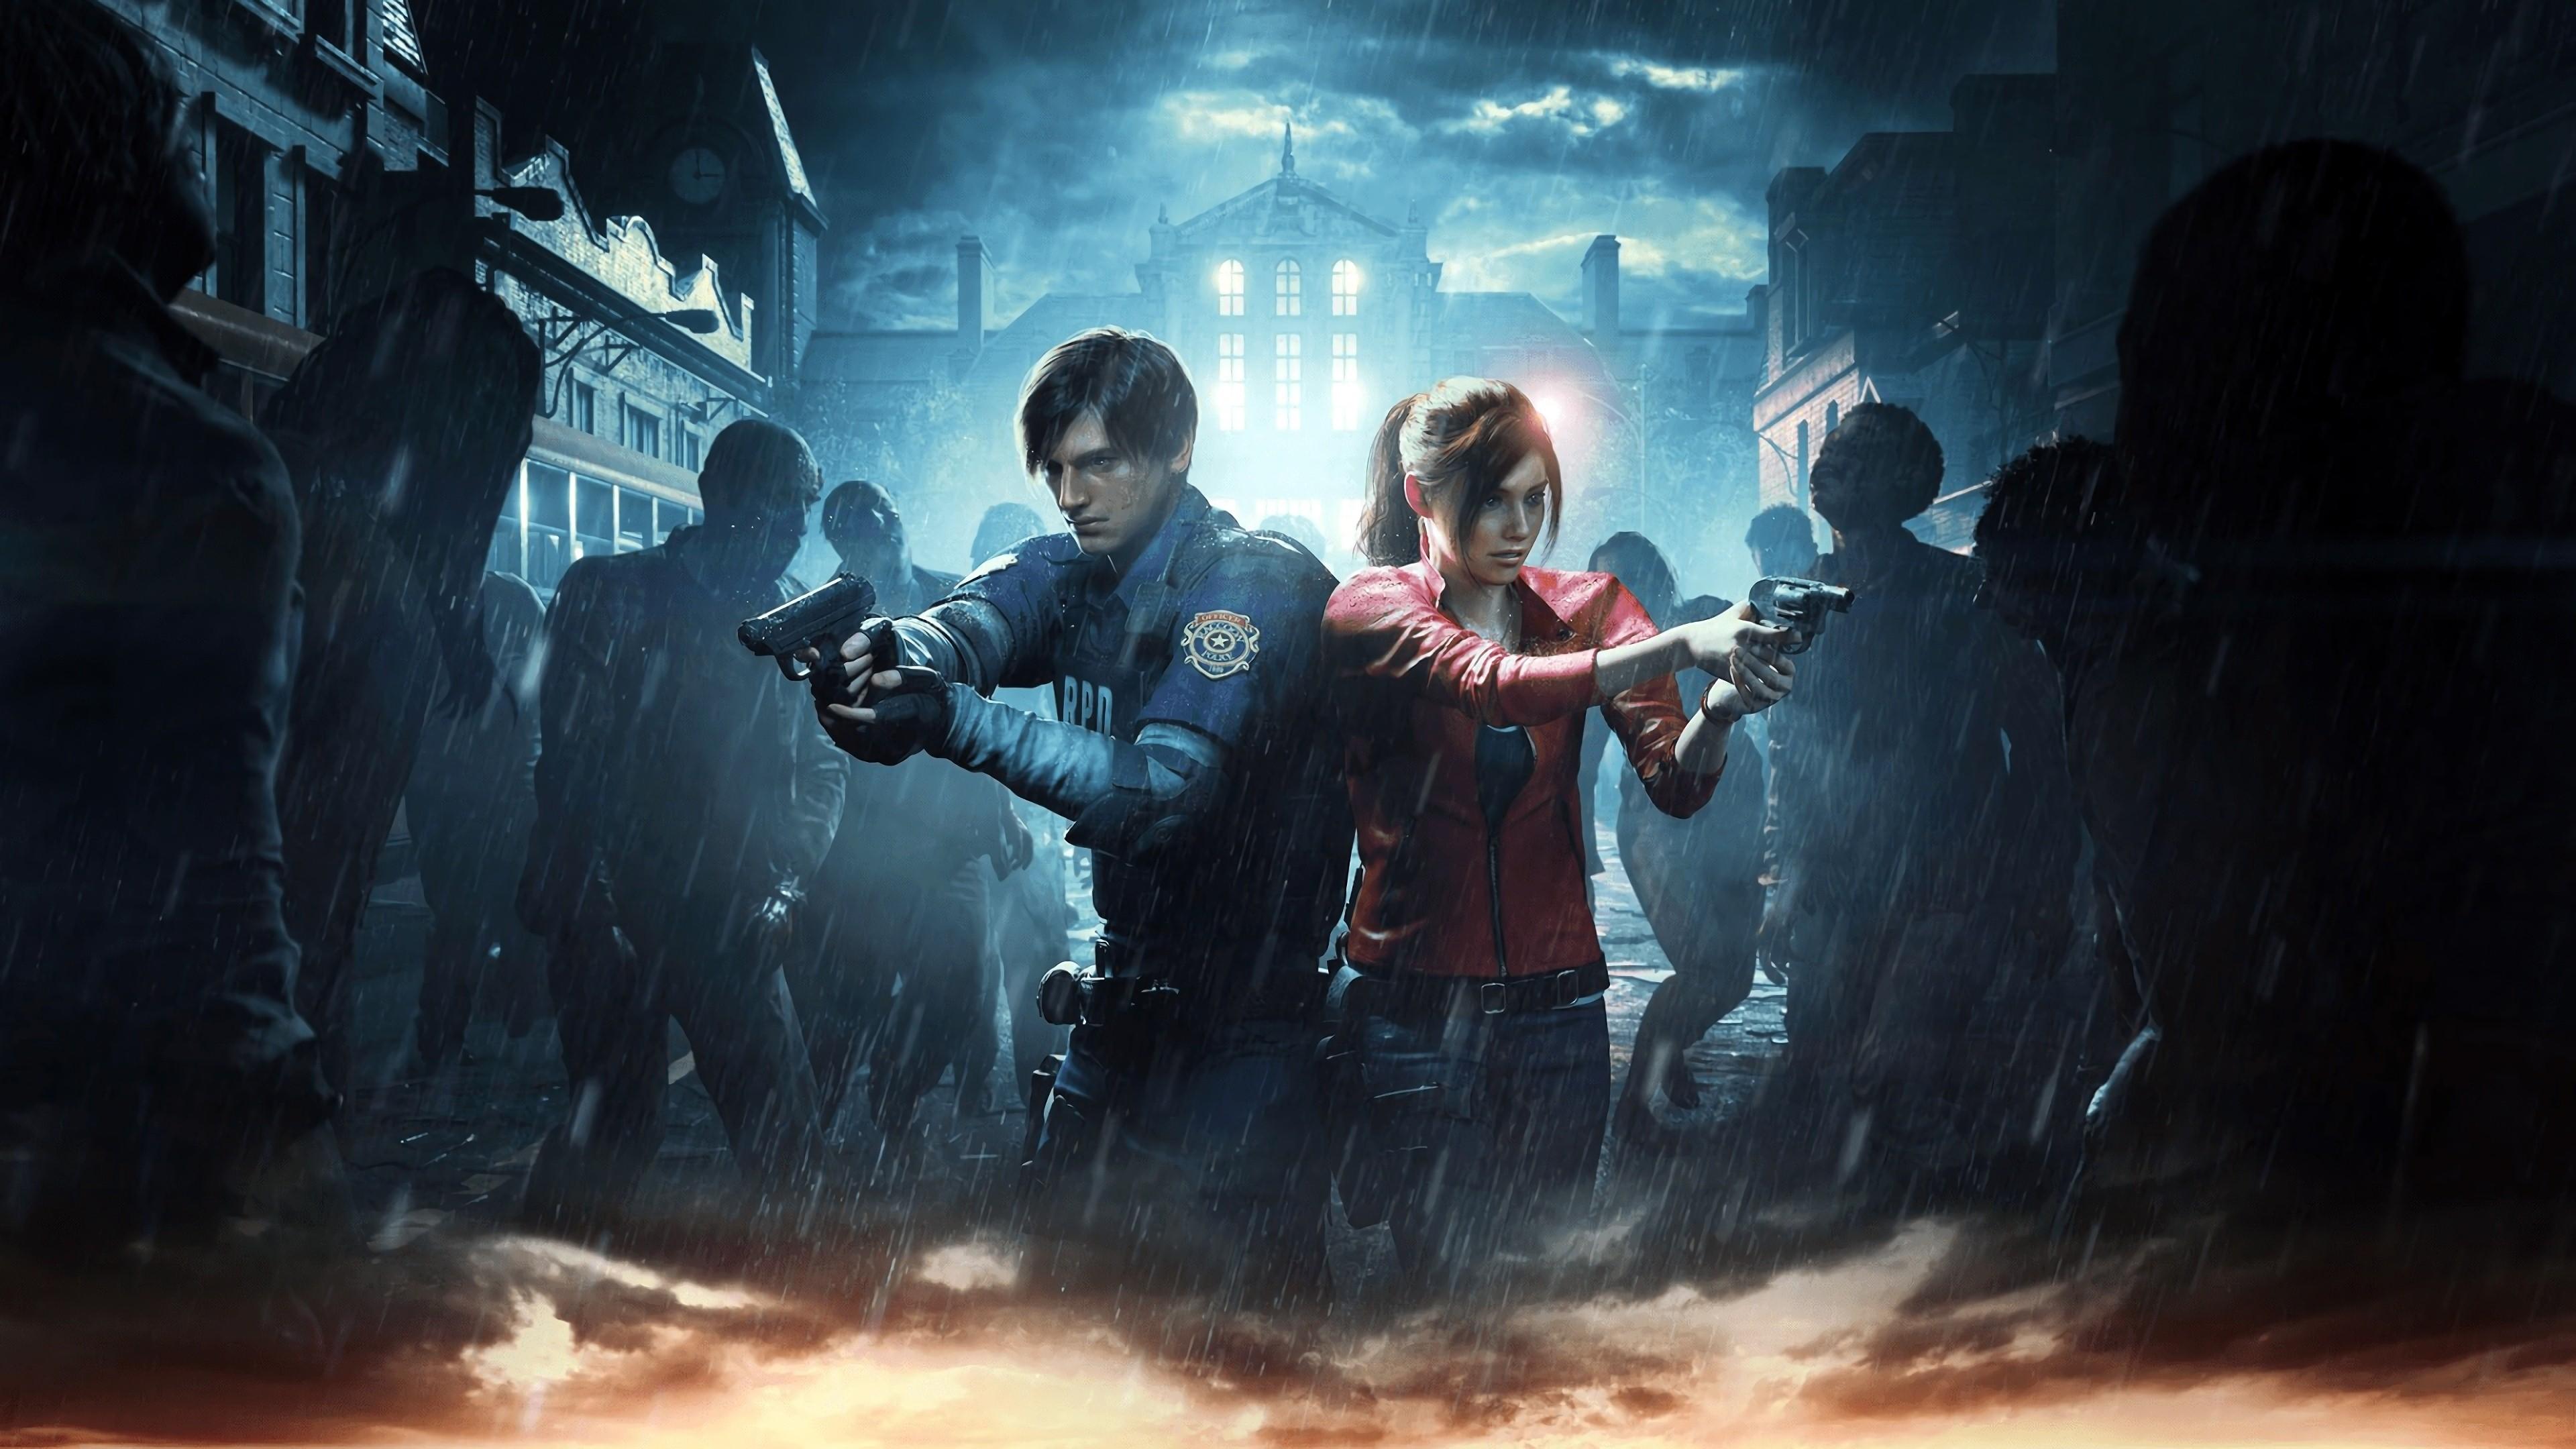 4K Wallpaper of 2019 Resident Evil 2 Survival Game